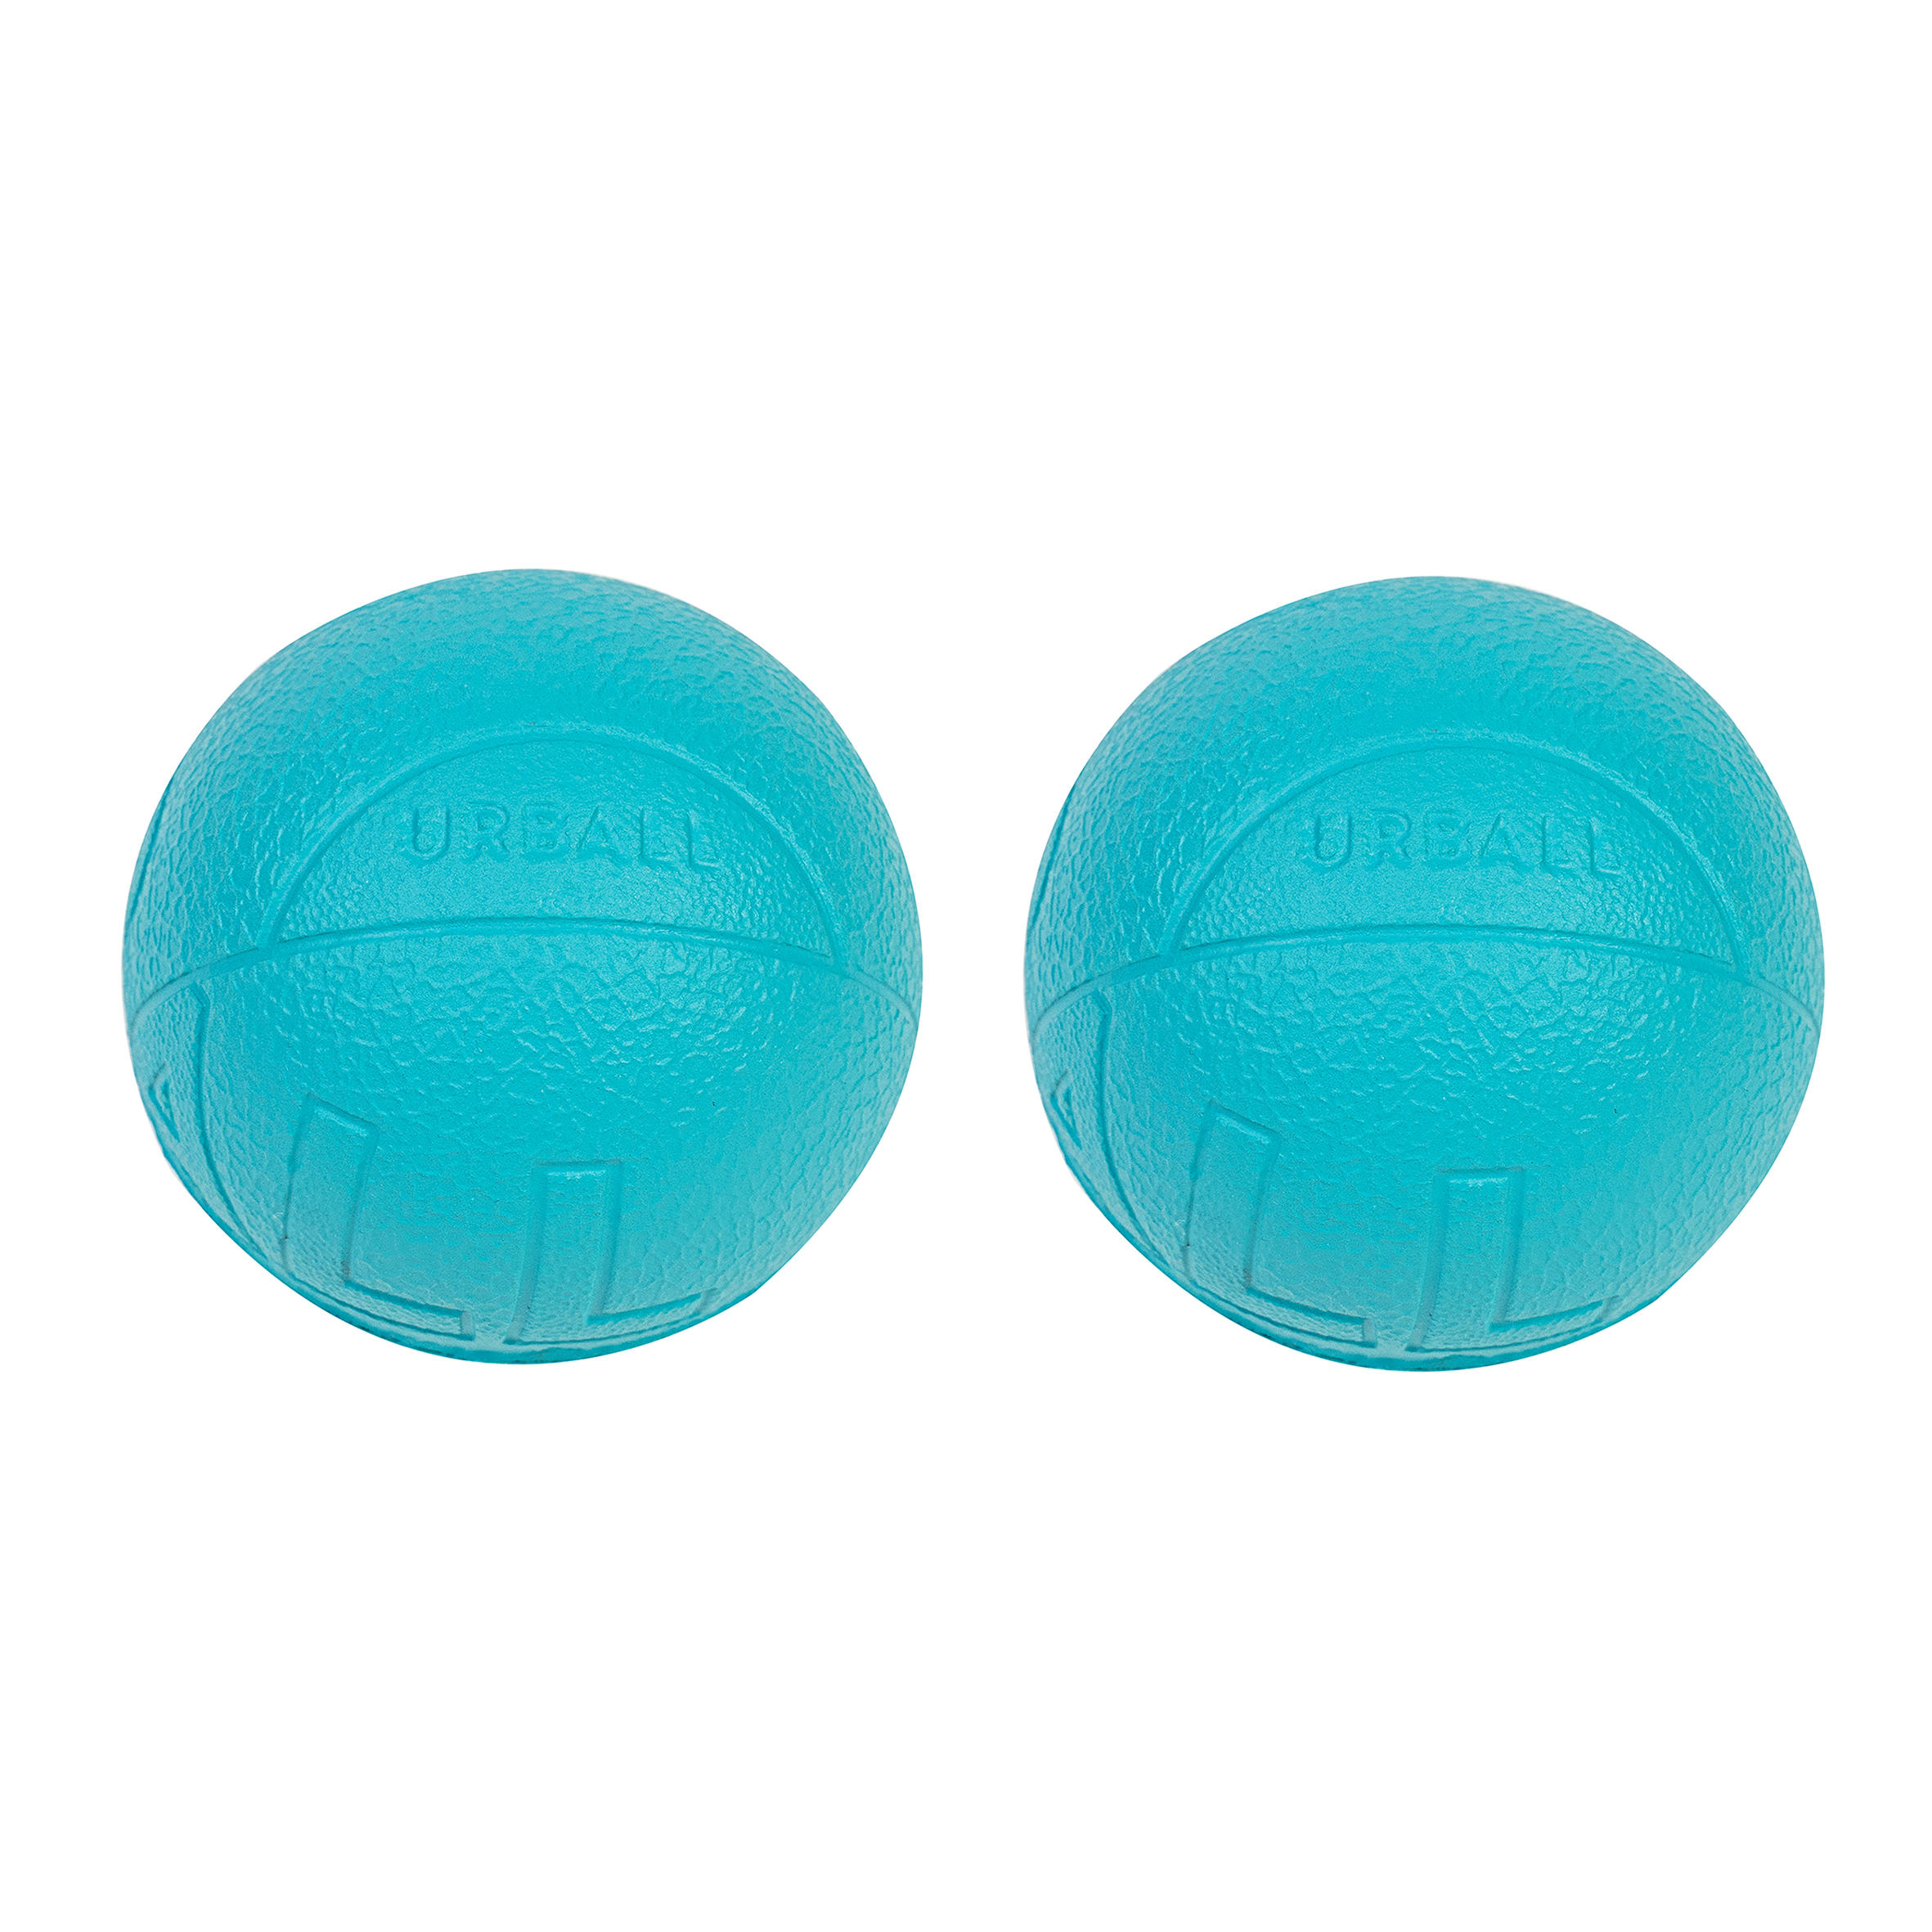 URBALL Soft Foam Balls One Wall SPB 100 Twin-Pack - Blue